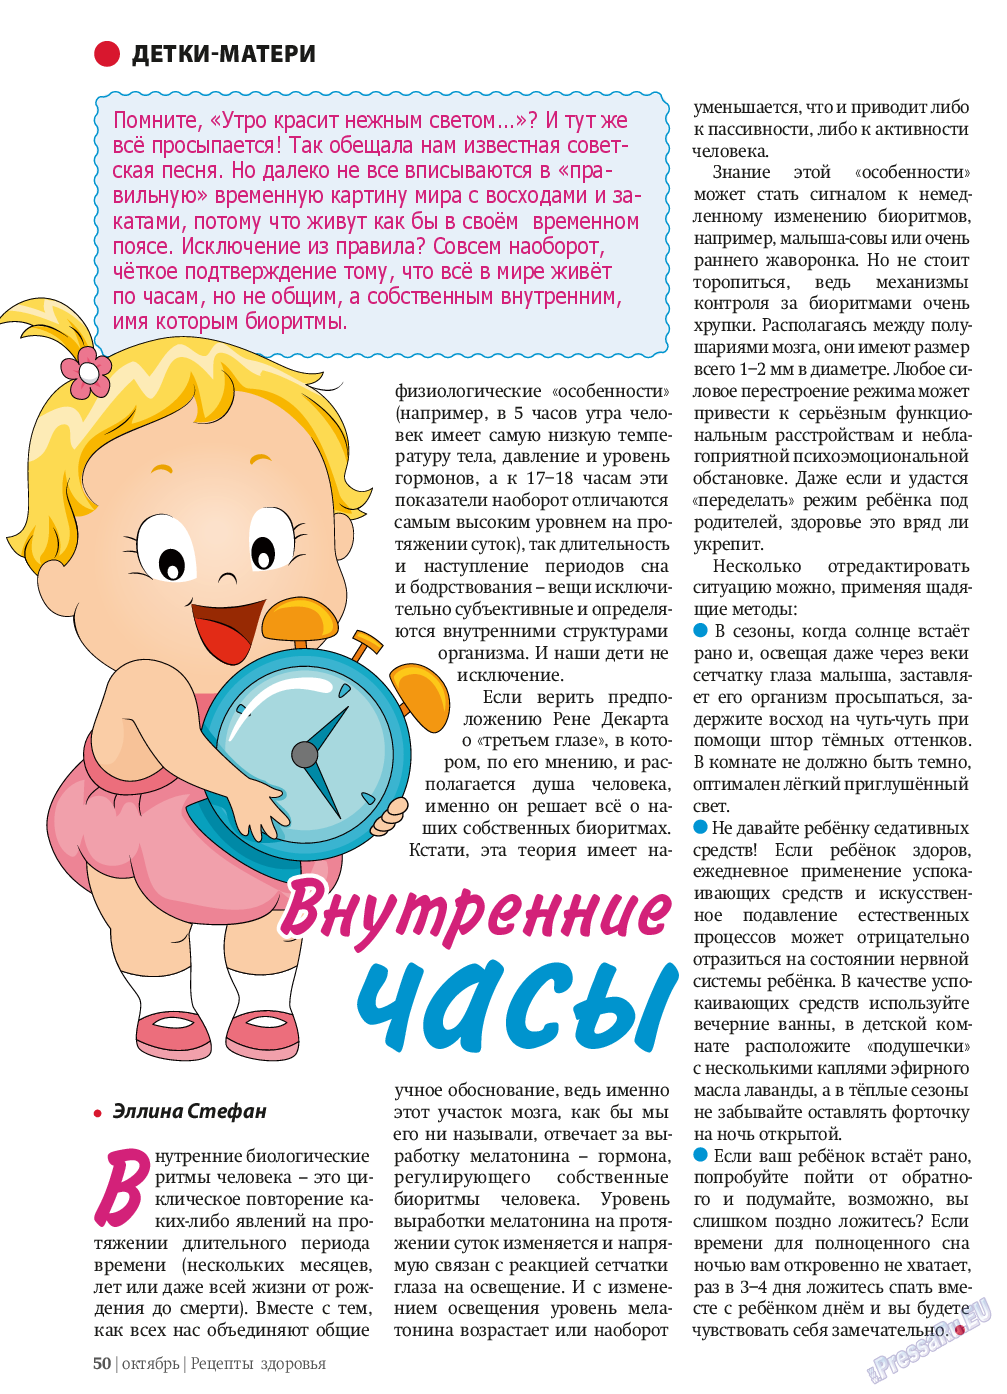 Рецепты здоровья, журнал. 2013 №10 стр.50